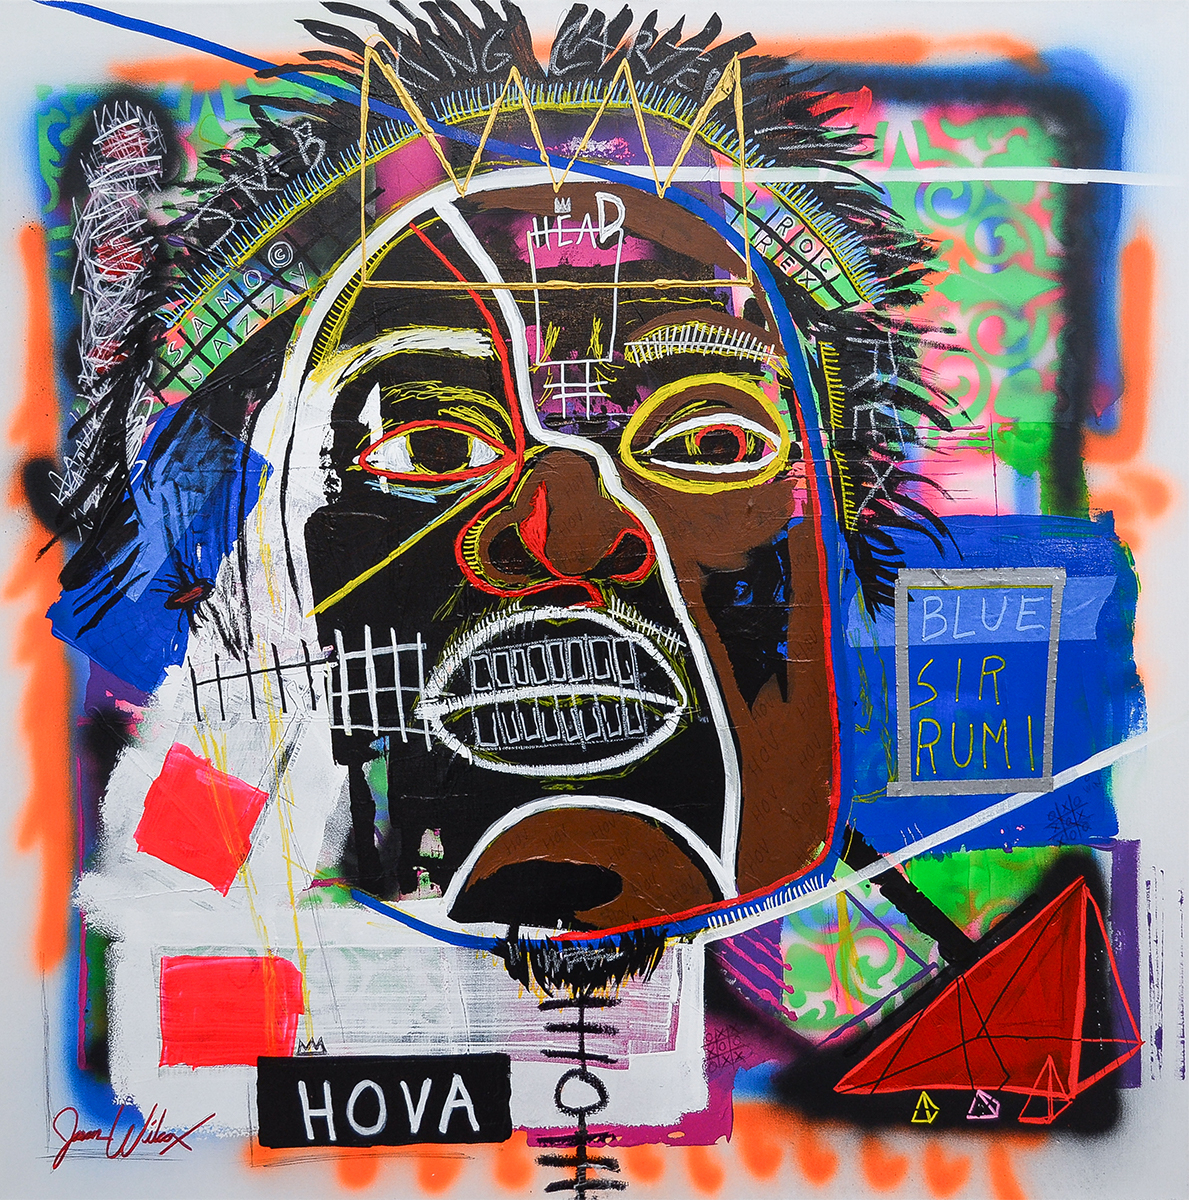 Head Hova (Jay-Z)